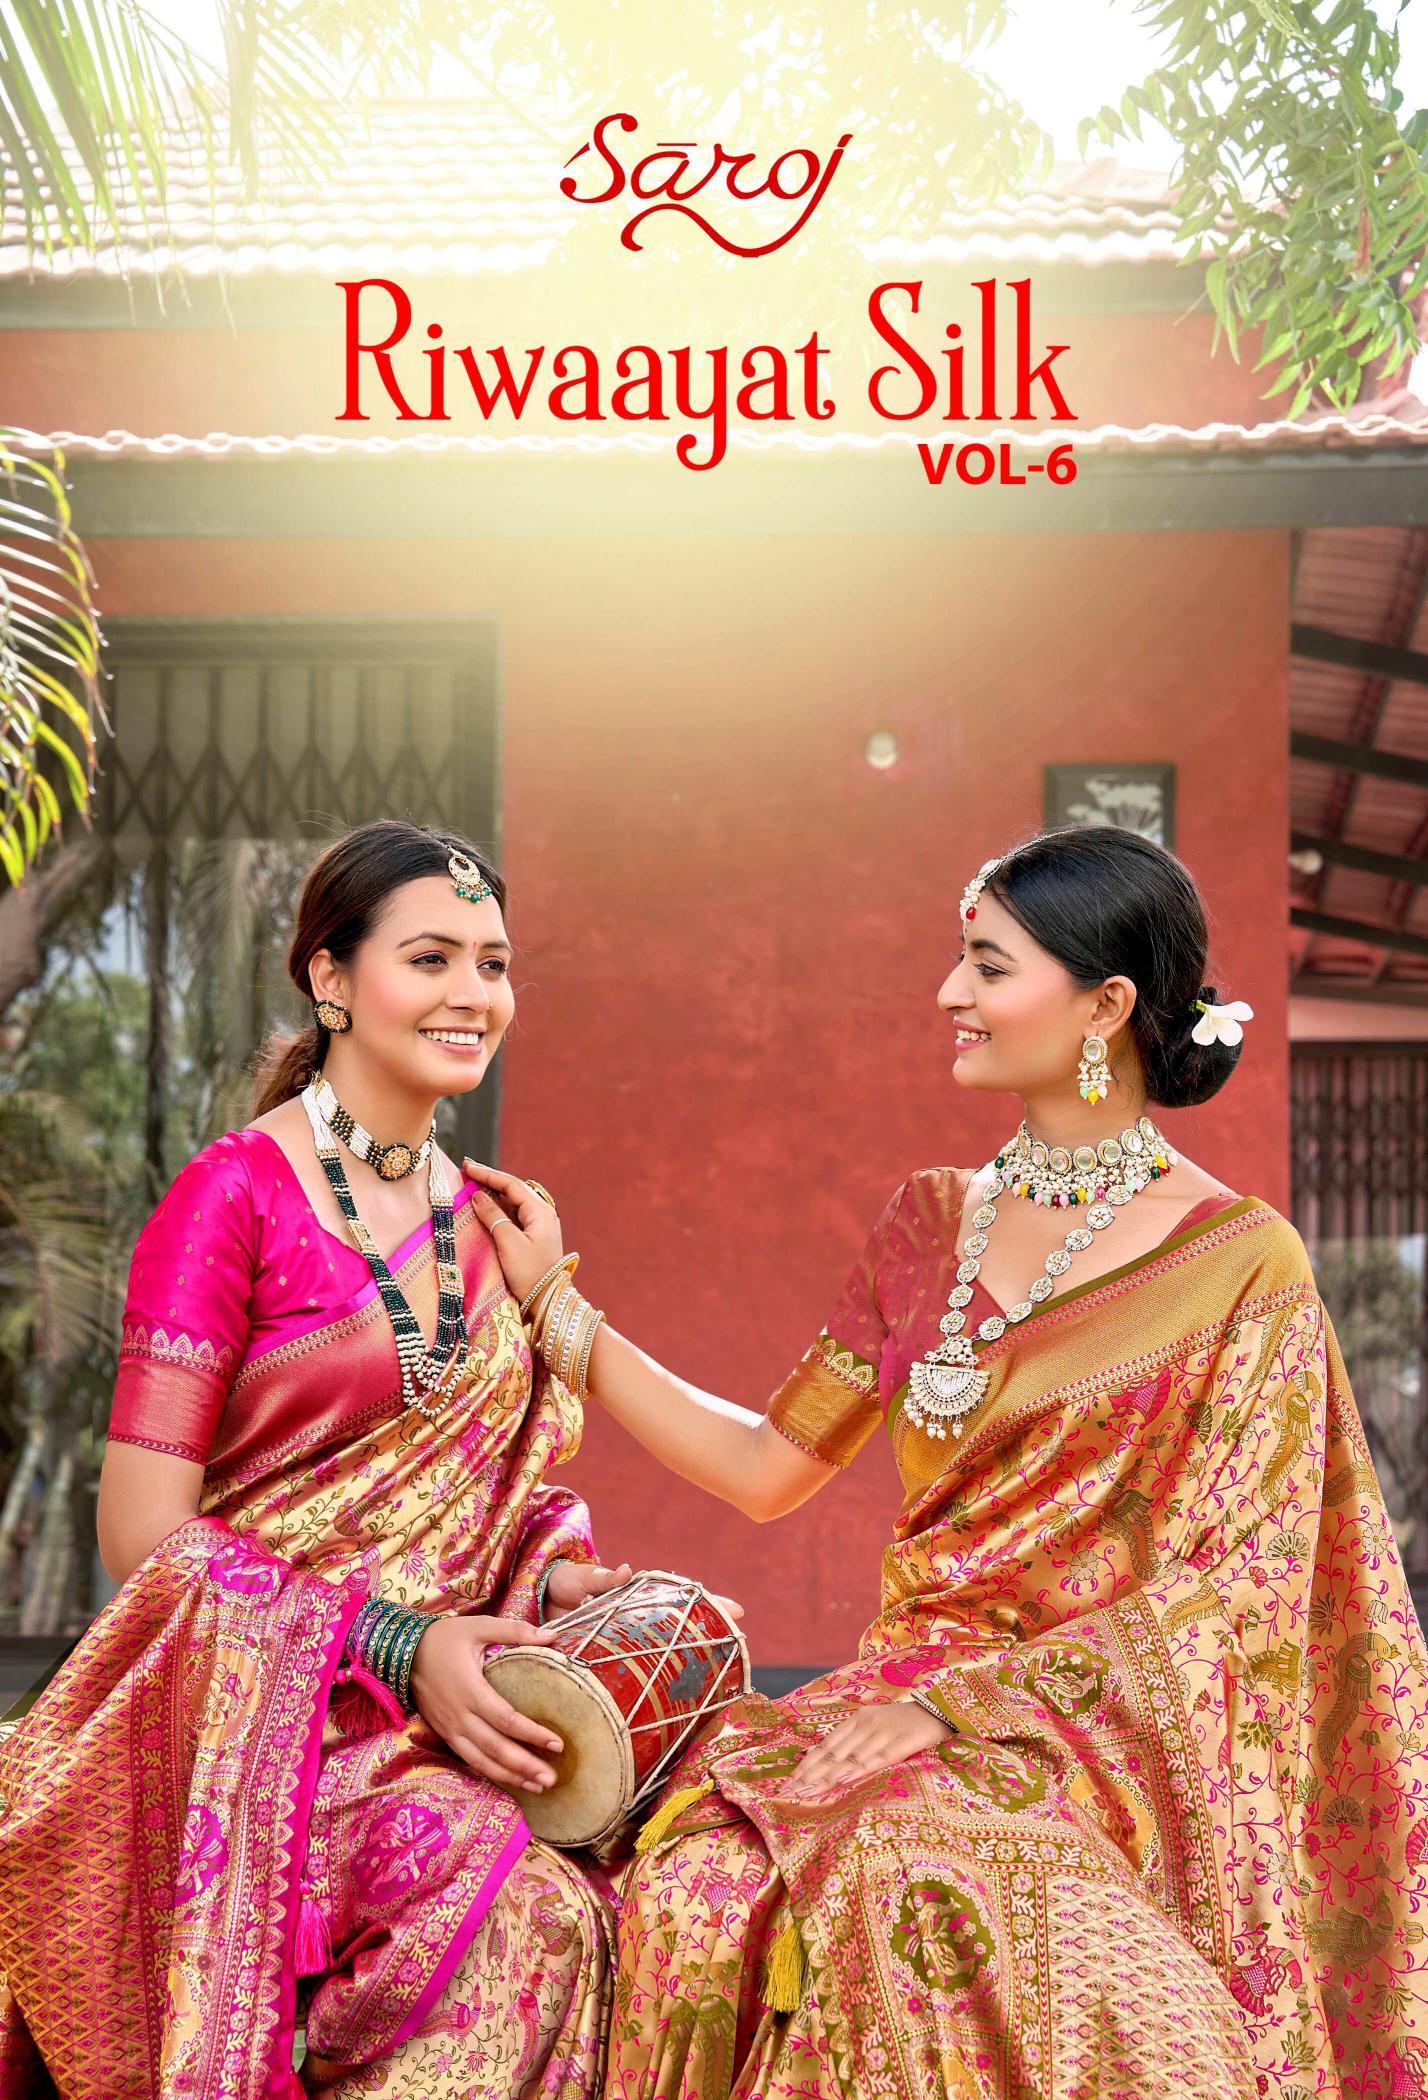 Saroj Riwaayat Silk  Vol - 6 Jari jacquard silk saree collection